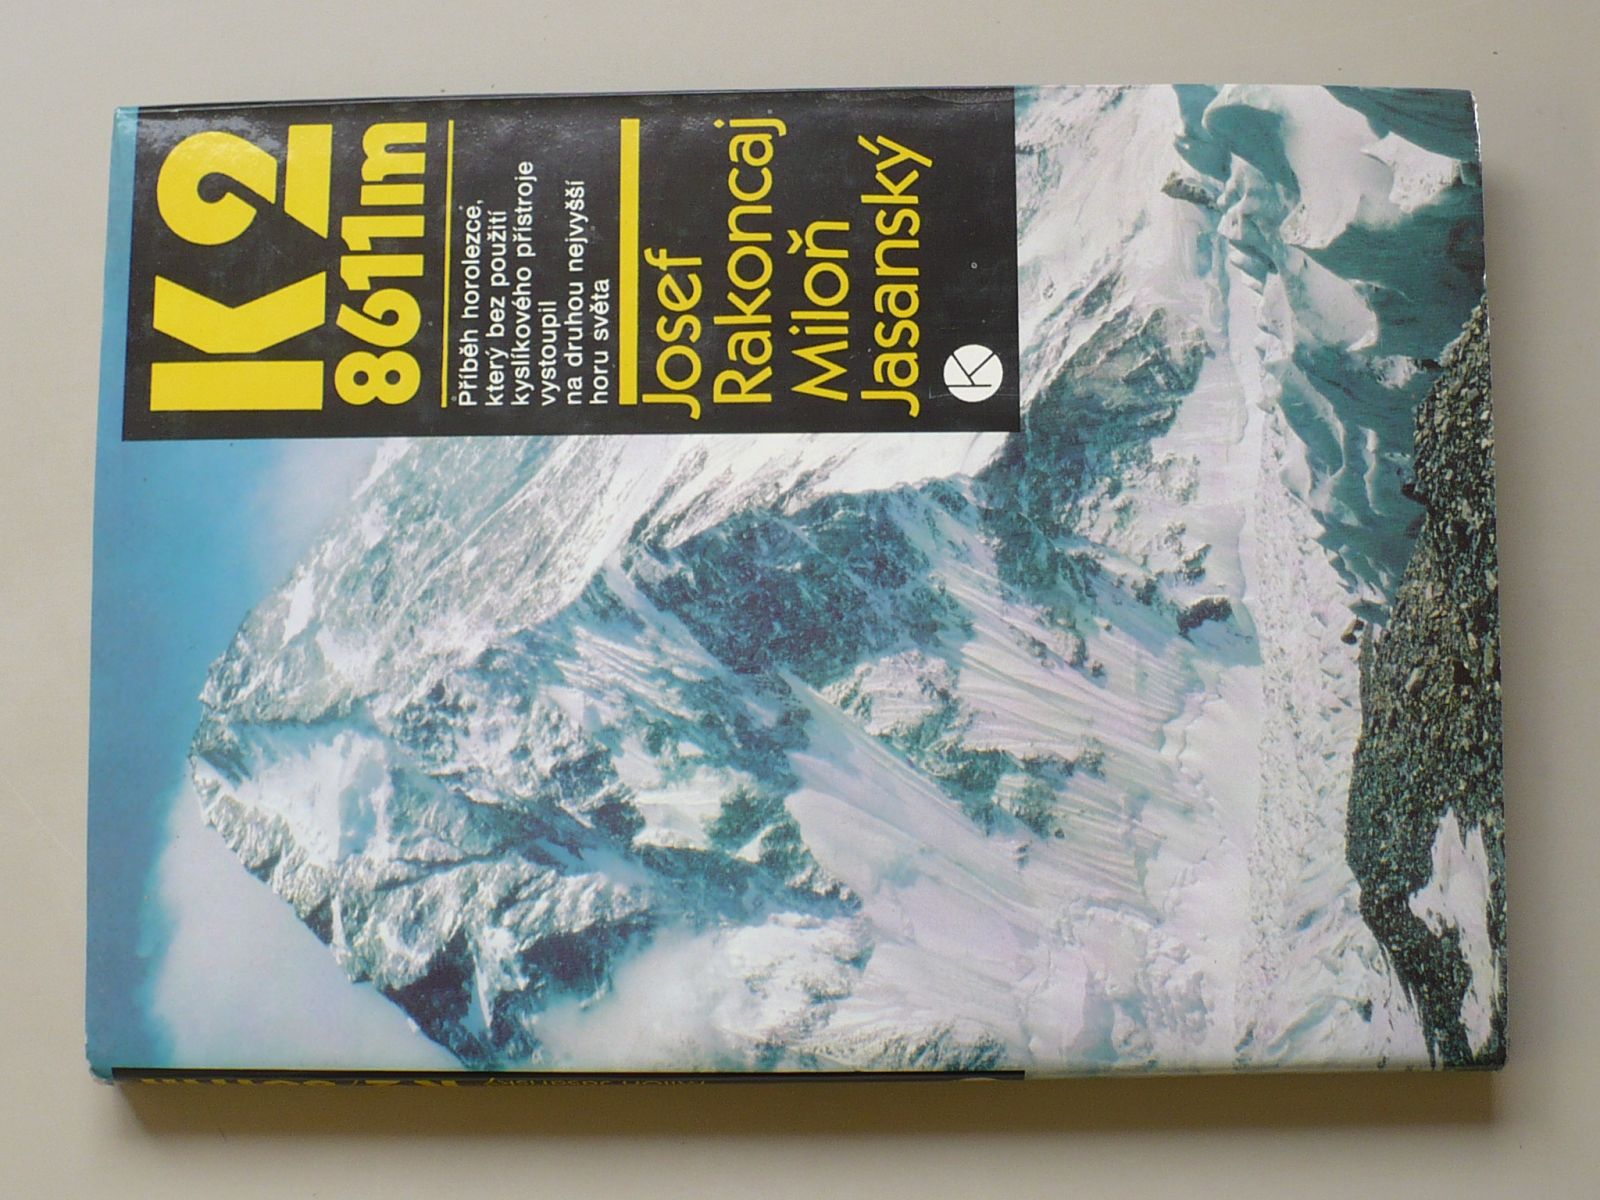 Josef Rakoncaj, Miloň Jasanský - K2 8611m - Neobyčejný příběh z druhé nejvyšší hory světa(1986)